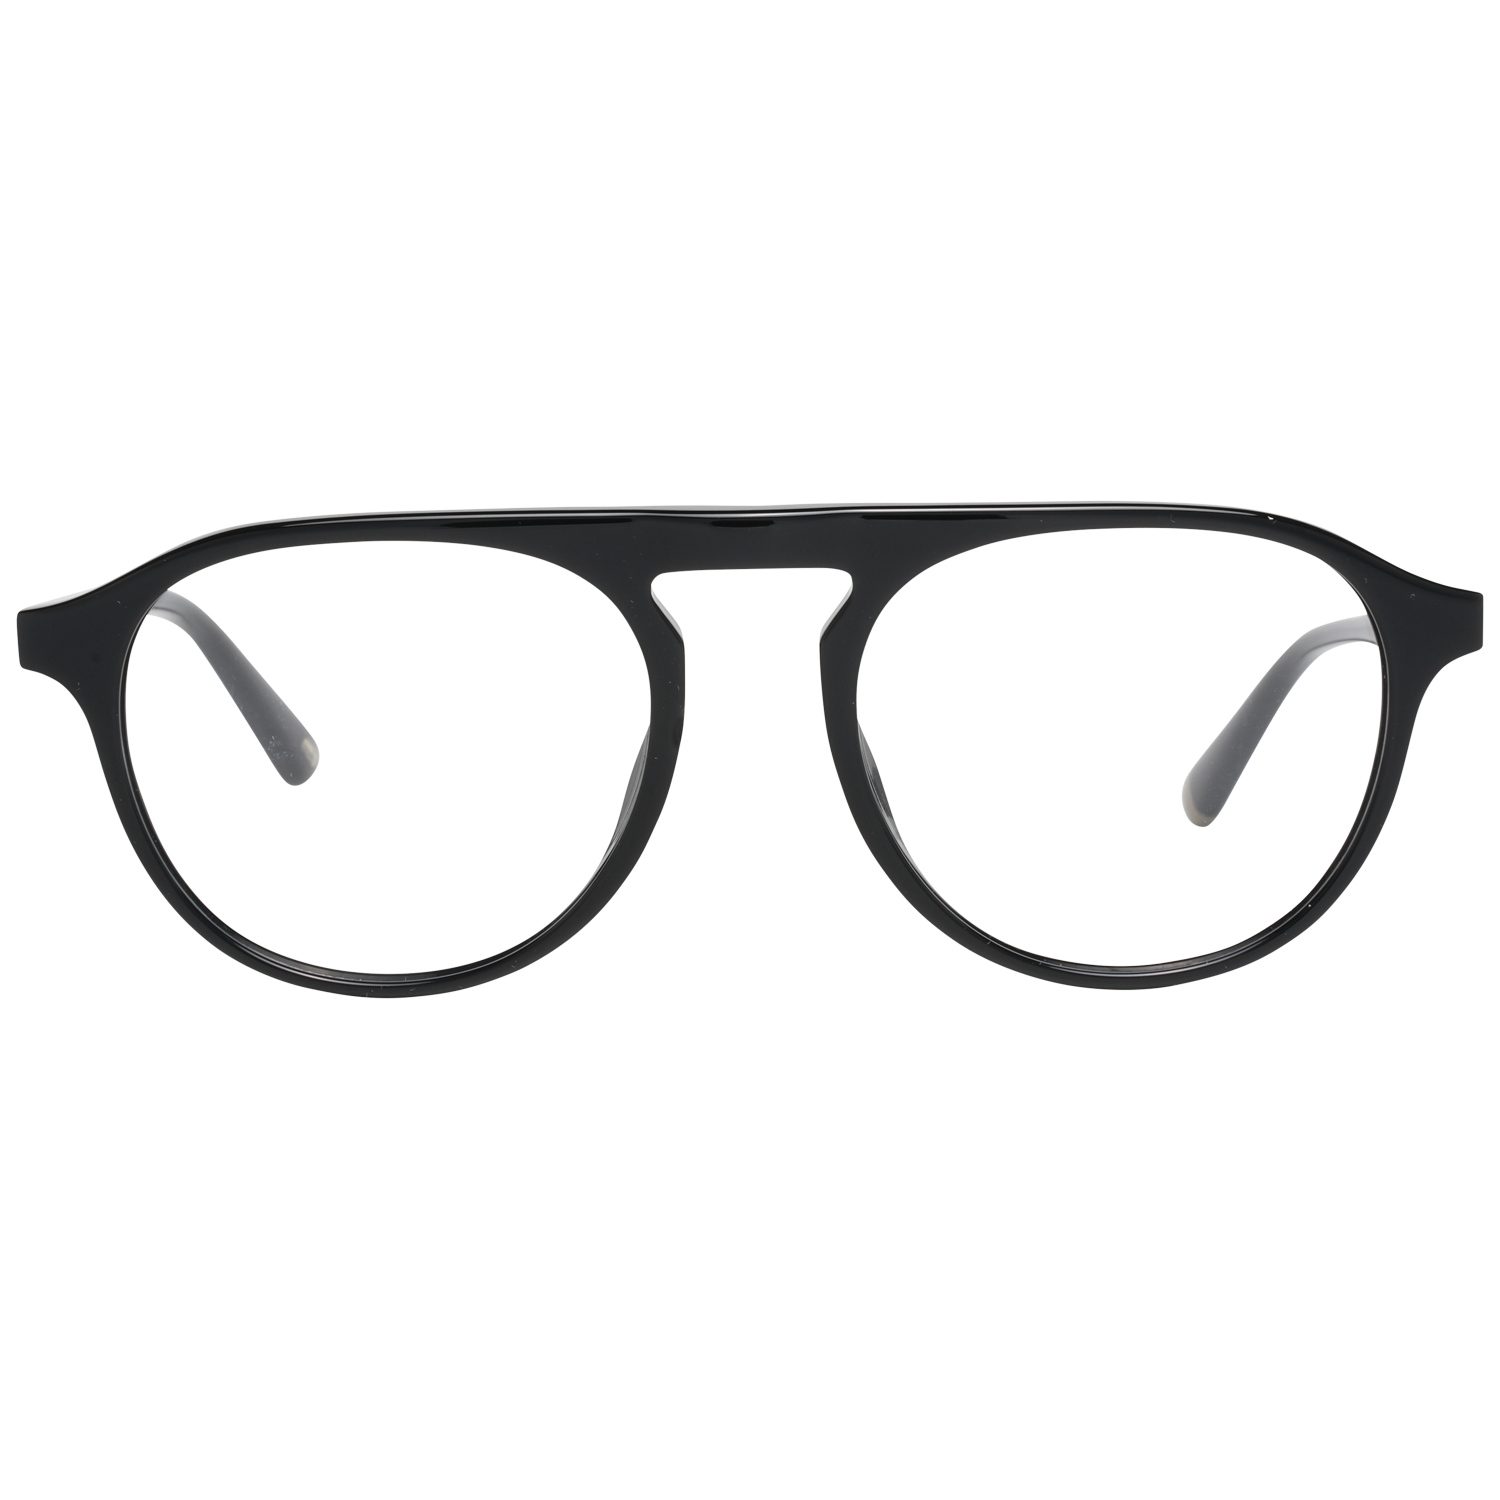 Web Frames Web Optical Frame WE5290 001 52 Eyeglasses Eyewear UK USA Australia 